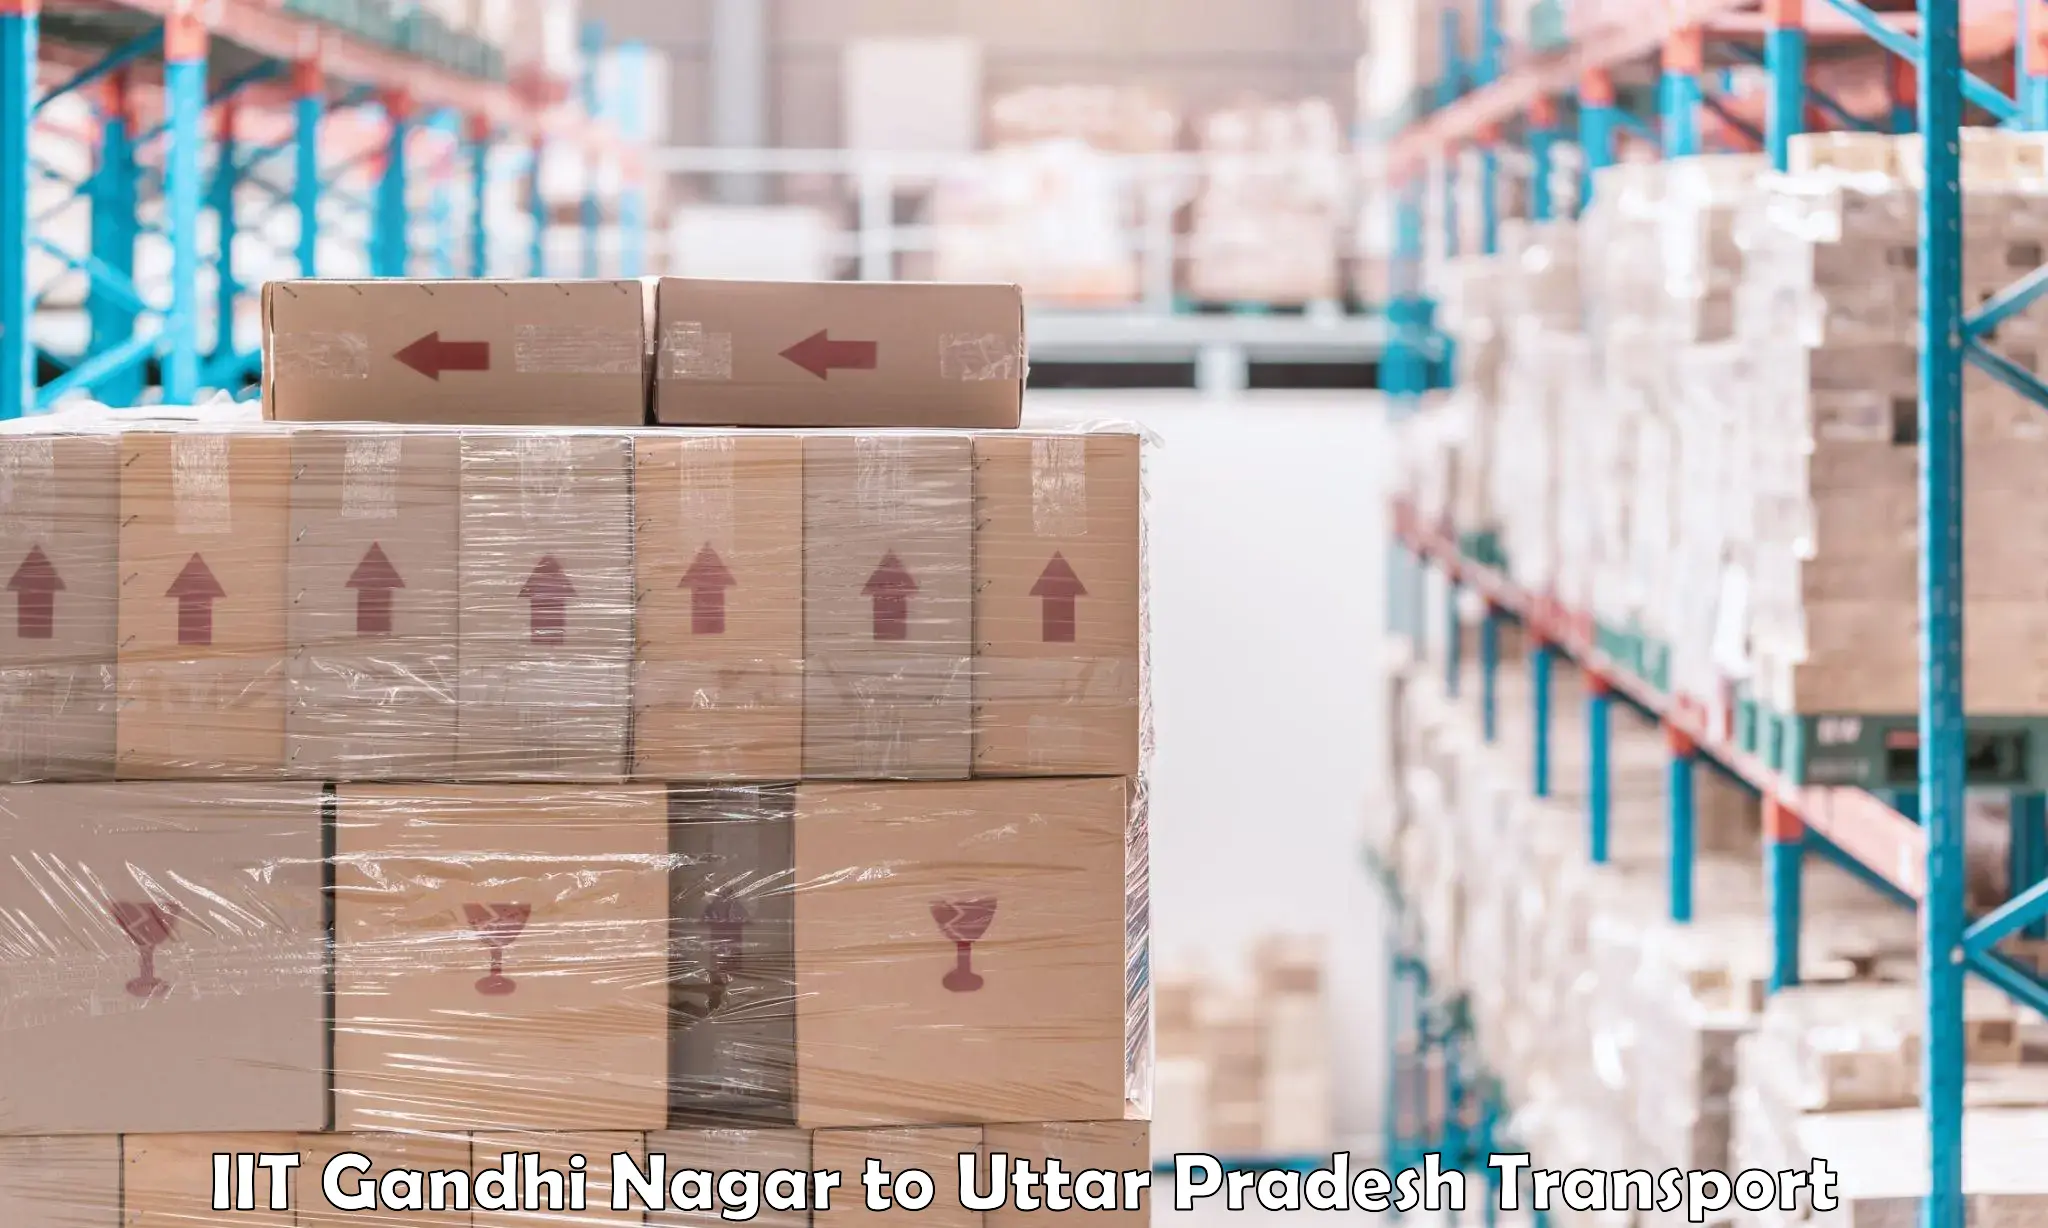 Shipping partner IIT Gandhi Nagar to Sirathu